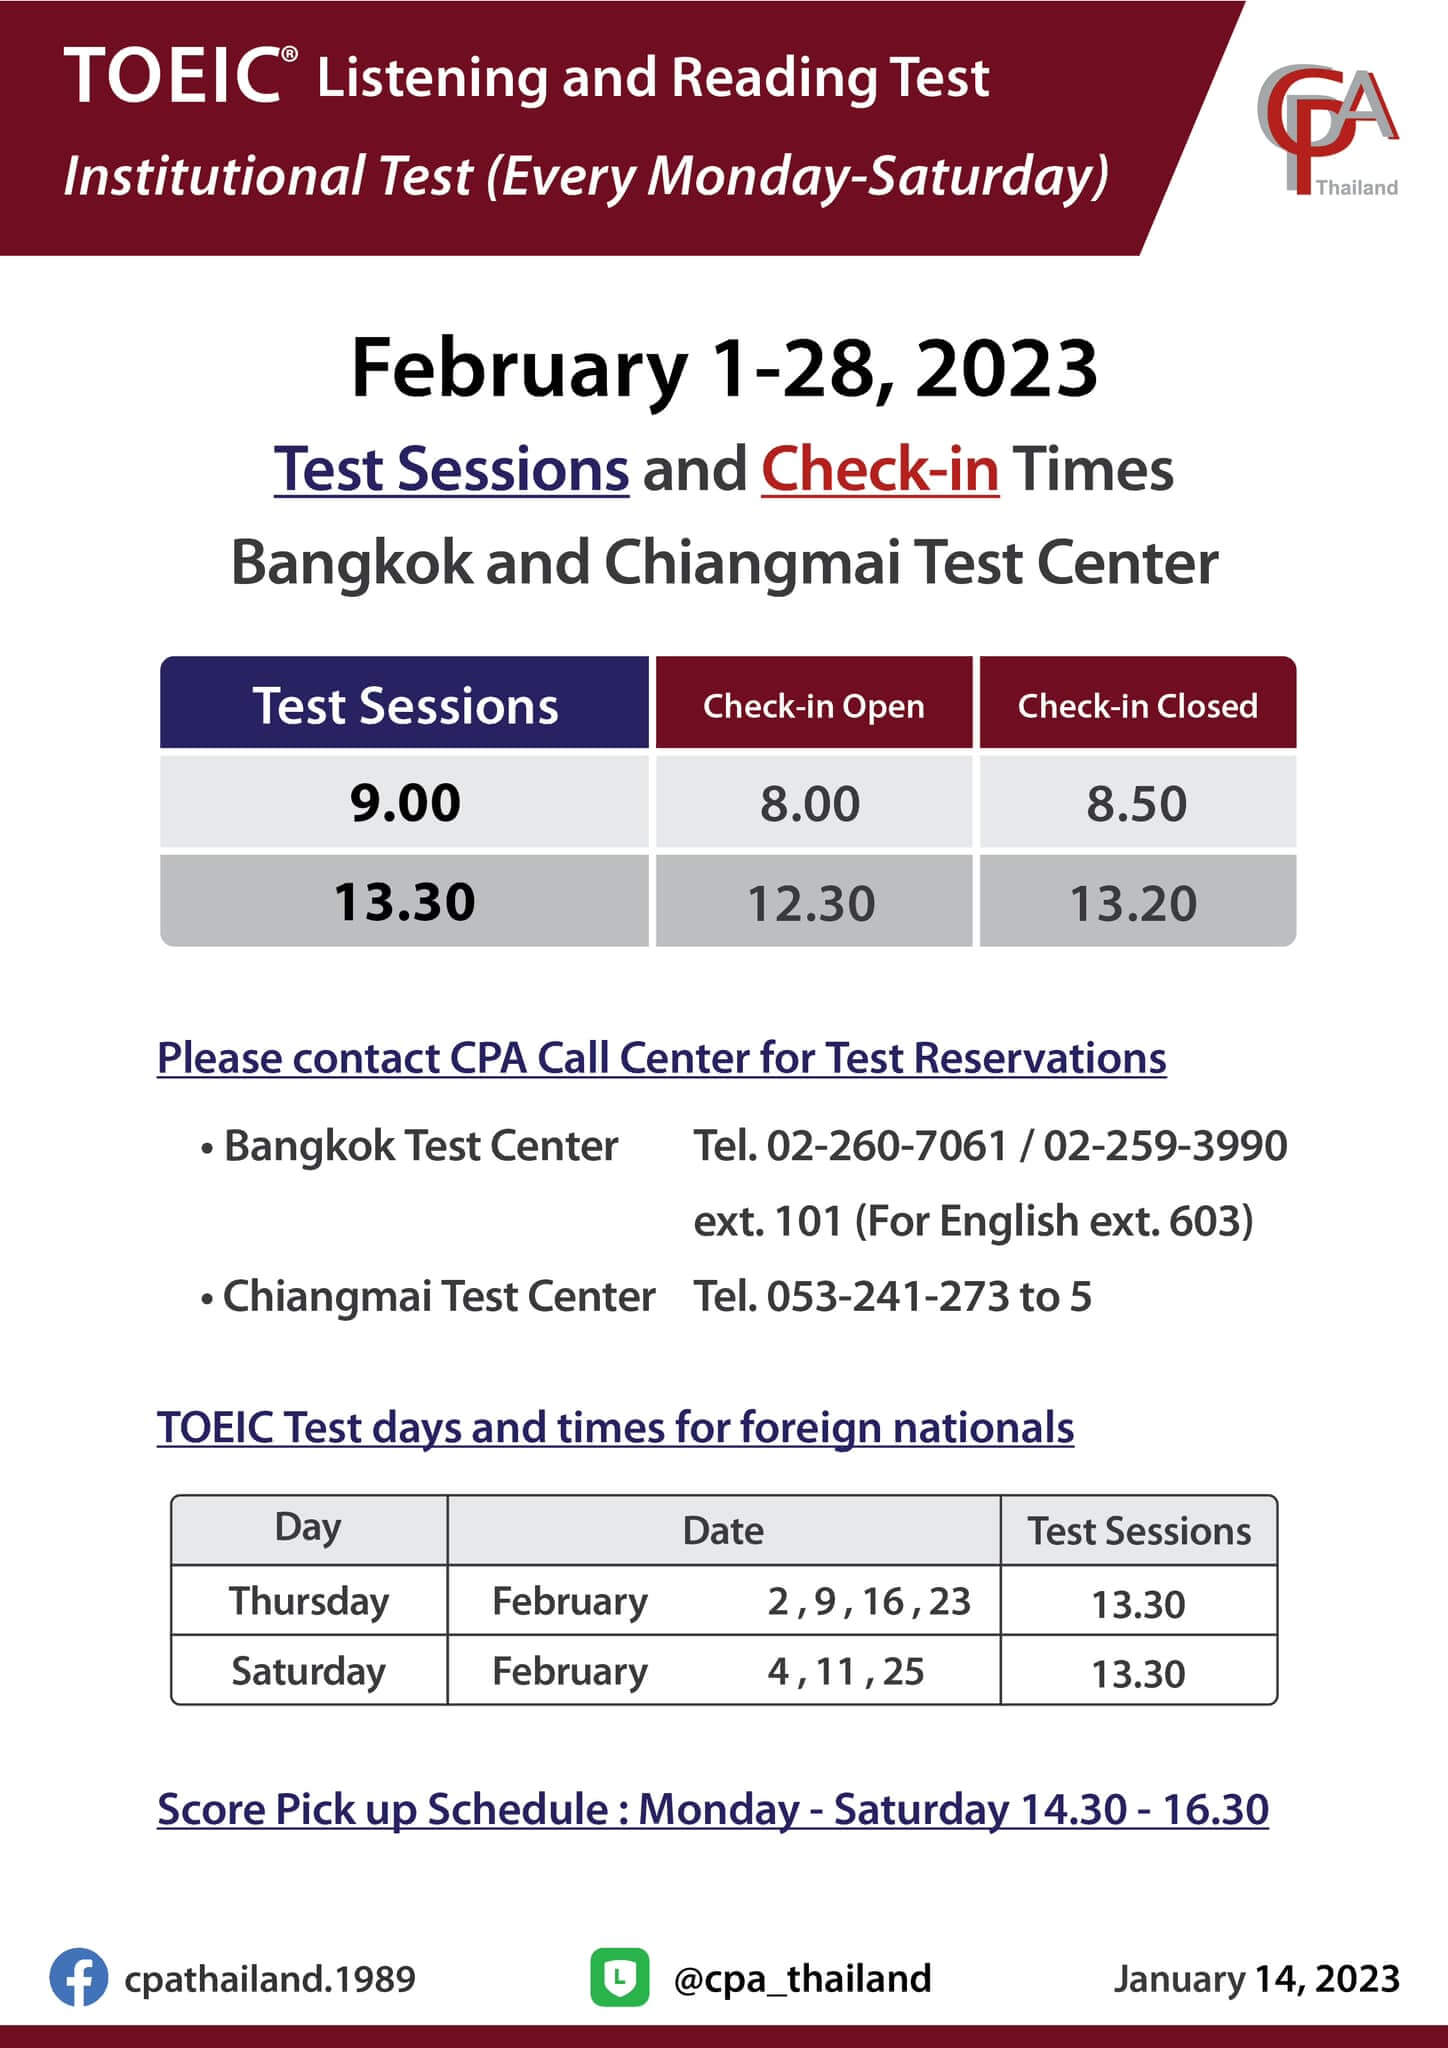 ตารางสอบ toeic กรุงเทพ เชียงใหม่ กุมภาพันธ์ 2566 ศูยน์สอบ CPA Thailand - เตรียมพร้อมก่อนสอบ ติว TOEIC การันตีคะแนน สถาบัน EduFirst